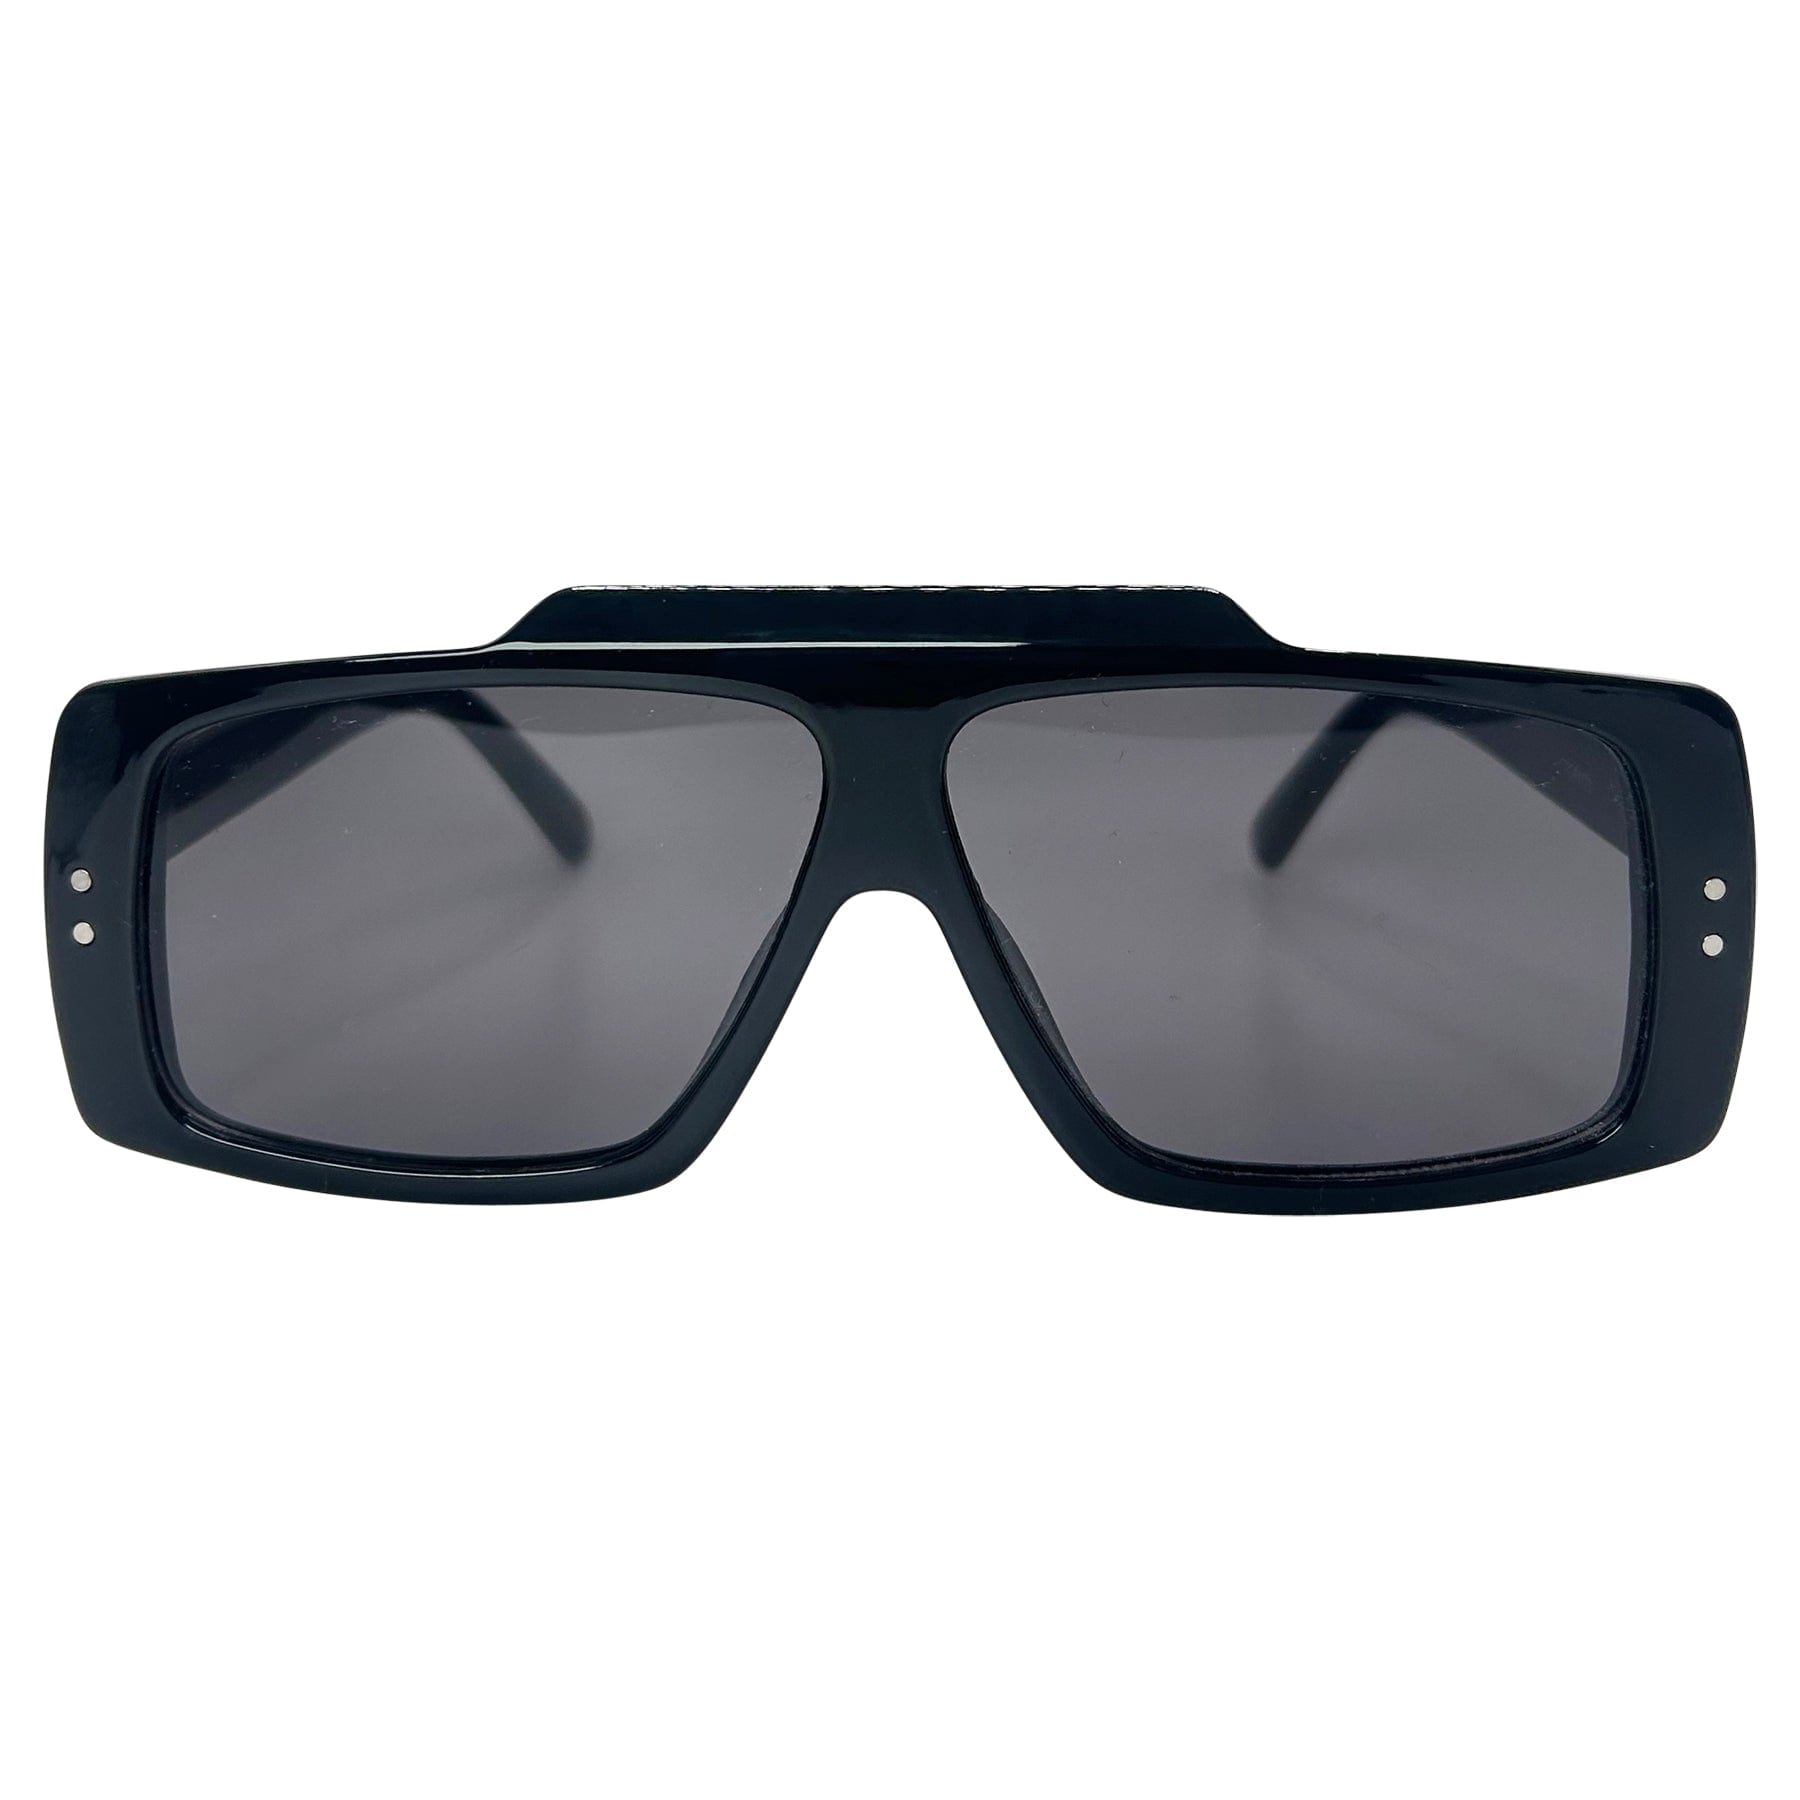 big black sunglasses with a boho chic 70s inspired aviator frame